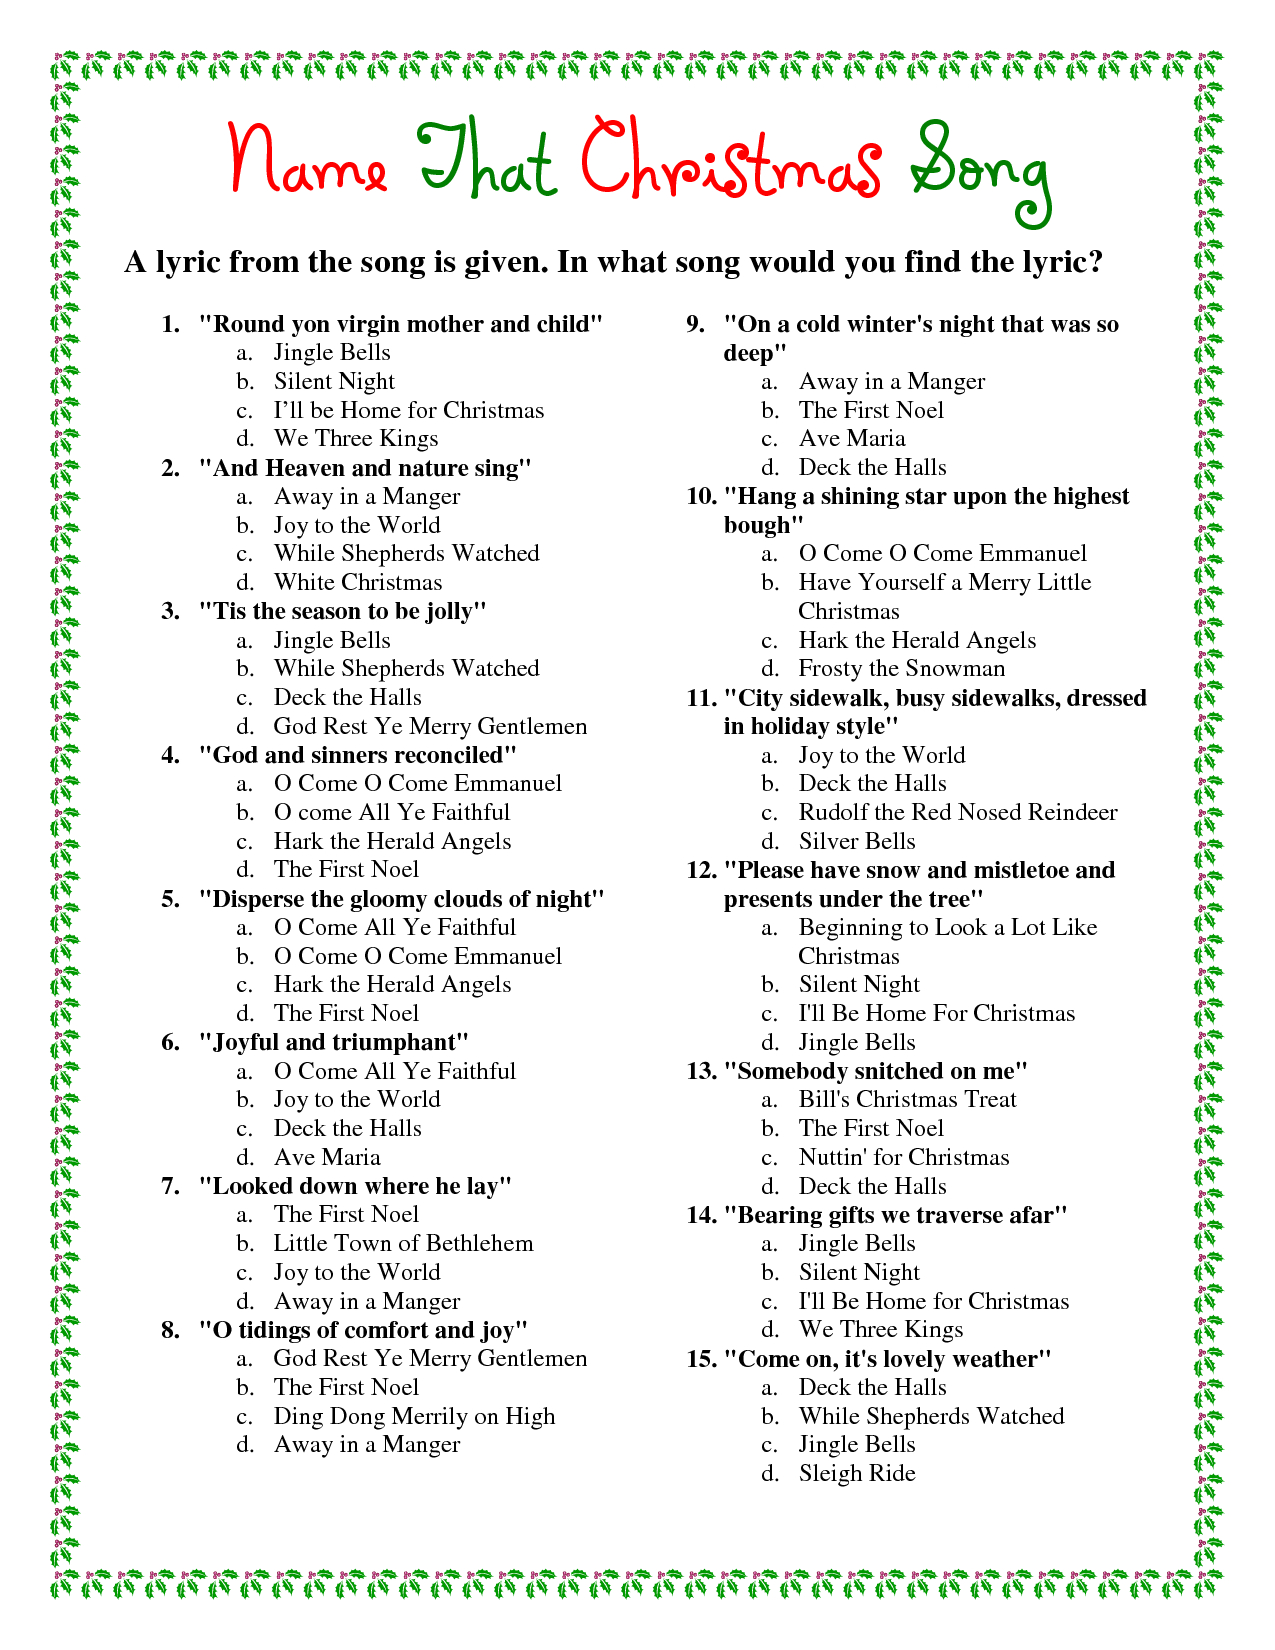 Printable Christmas Song Trivia | Christmas | Christmas Trivia - Free Christmas Picture Quiz Questions And Answers Printable